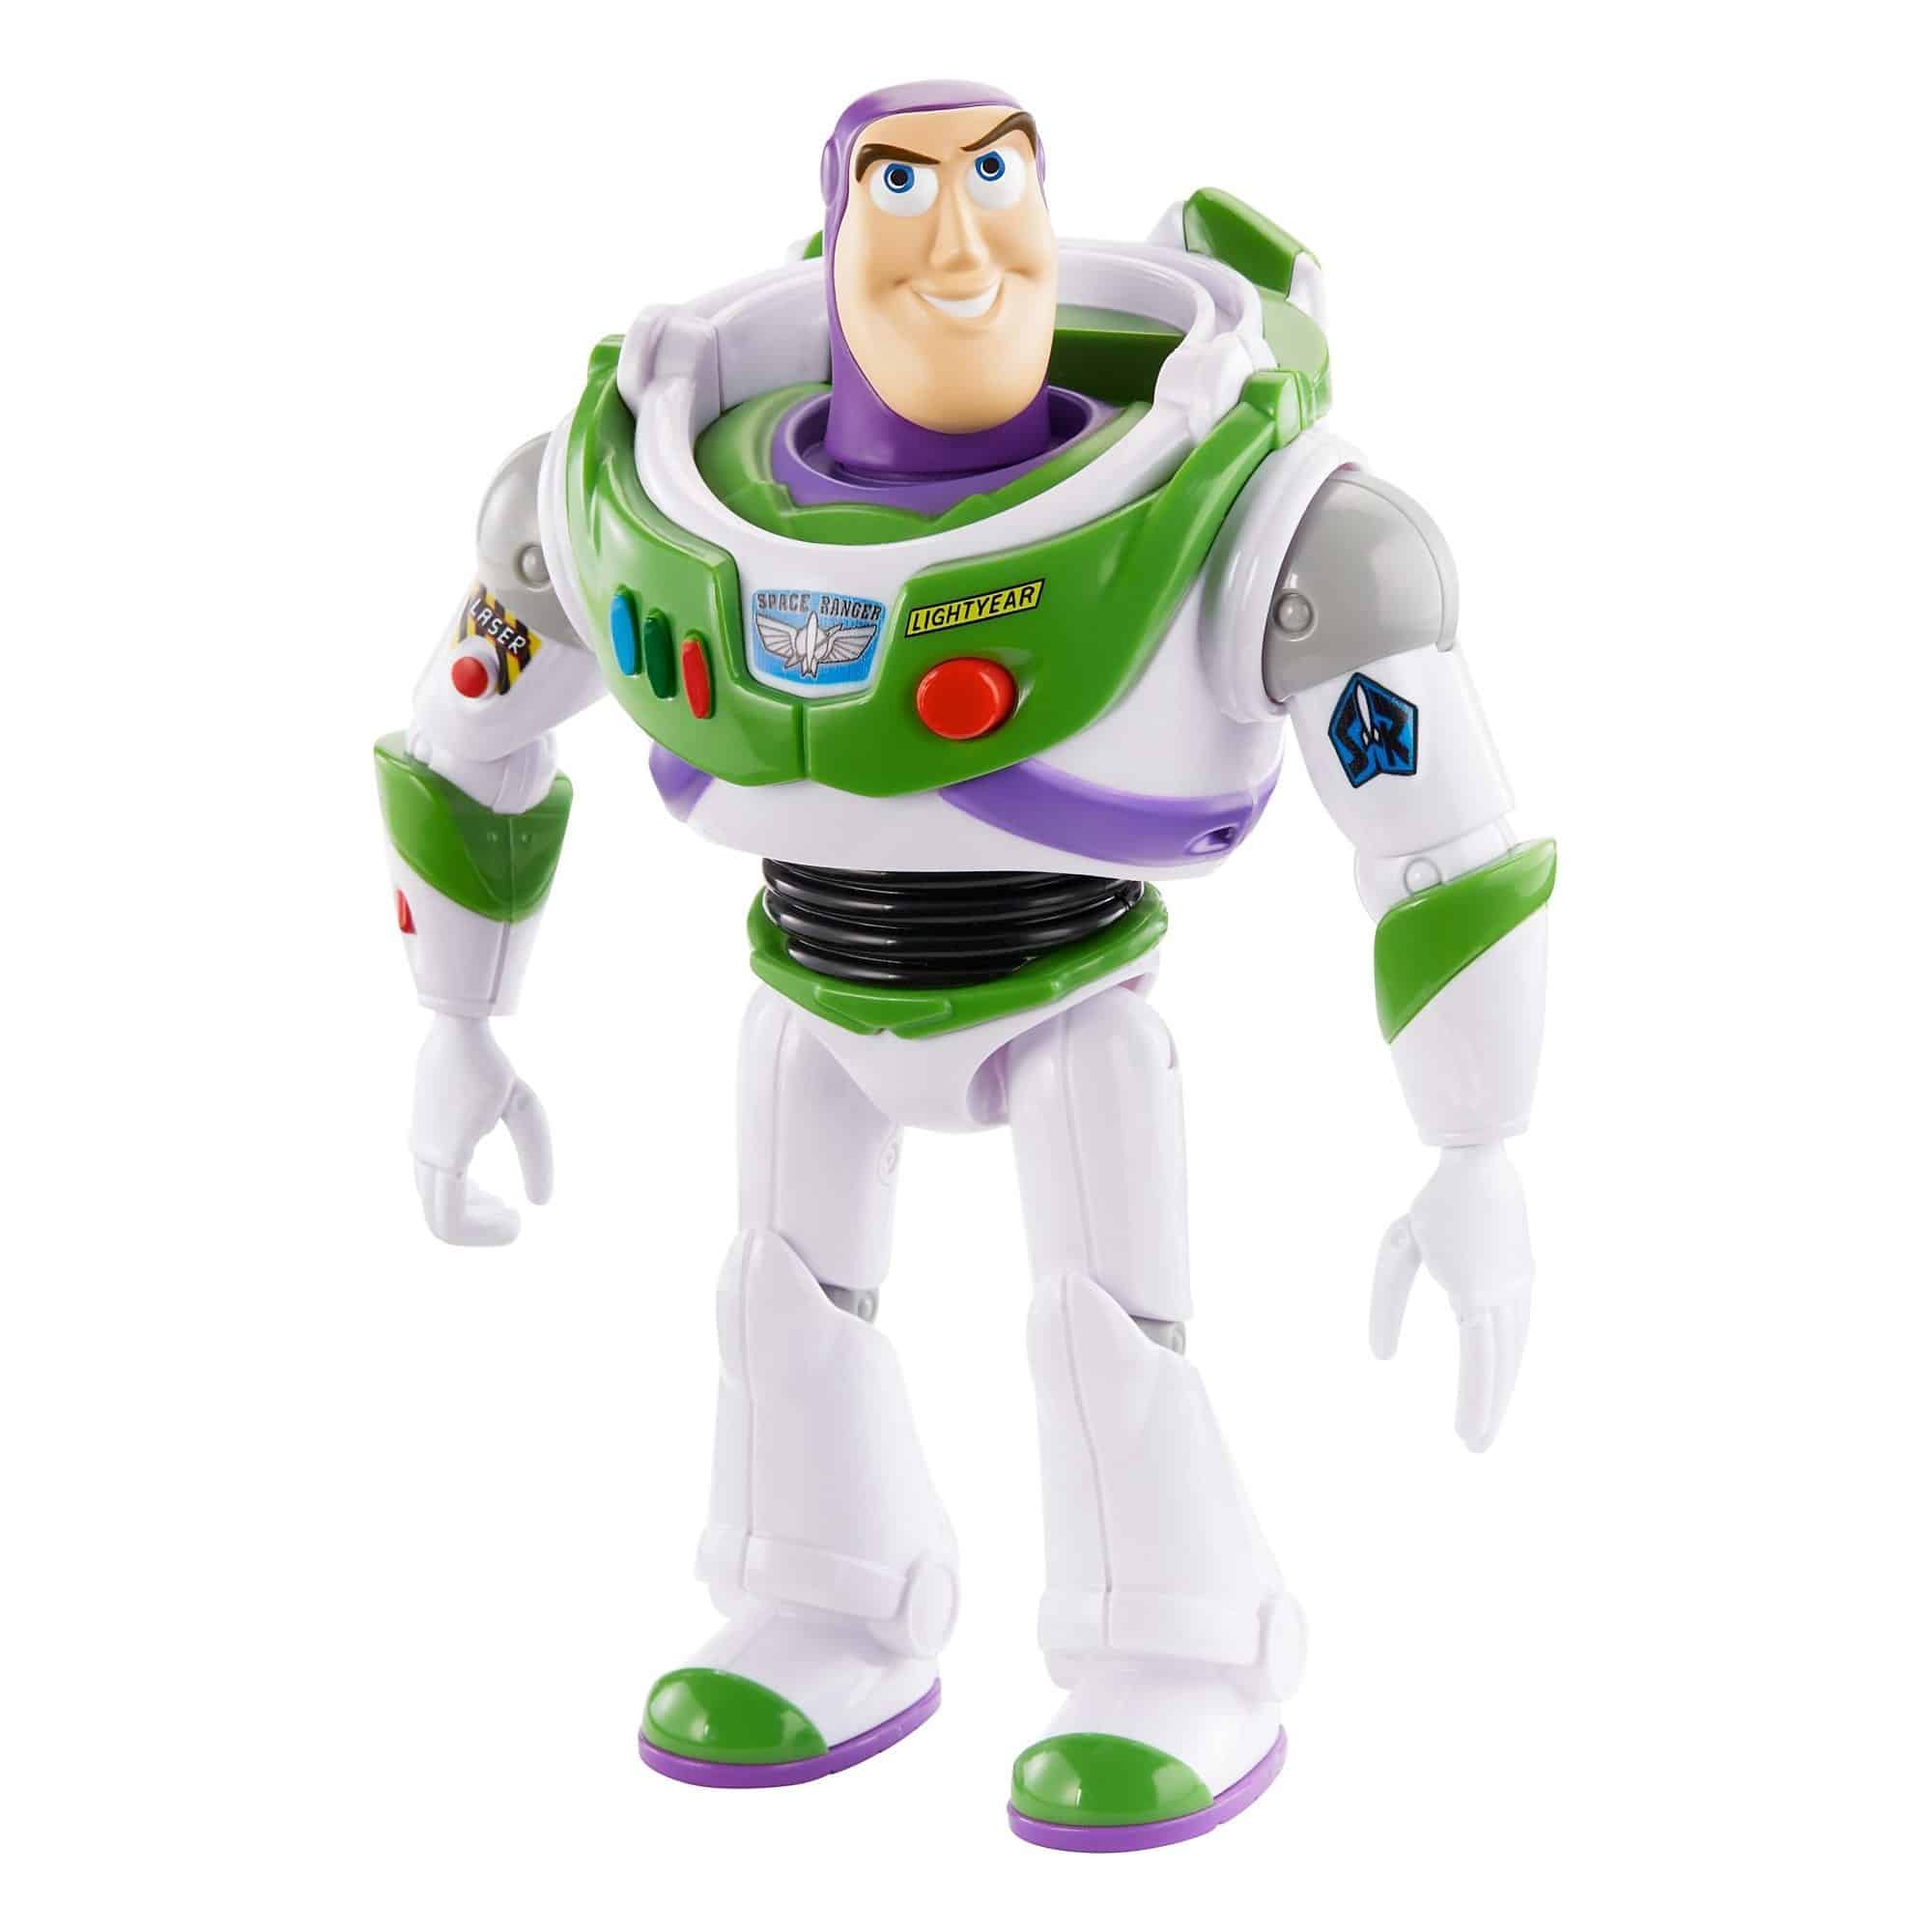 Toy Story 4 - True Talkers - Buzz Lightyear